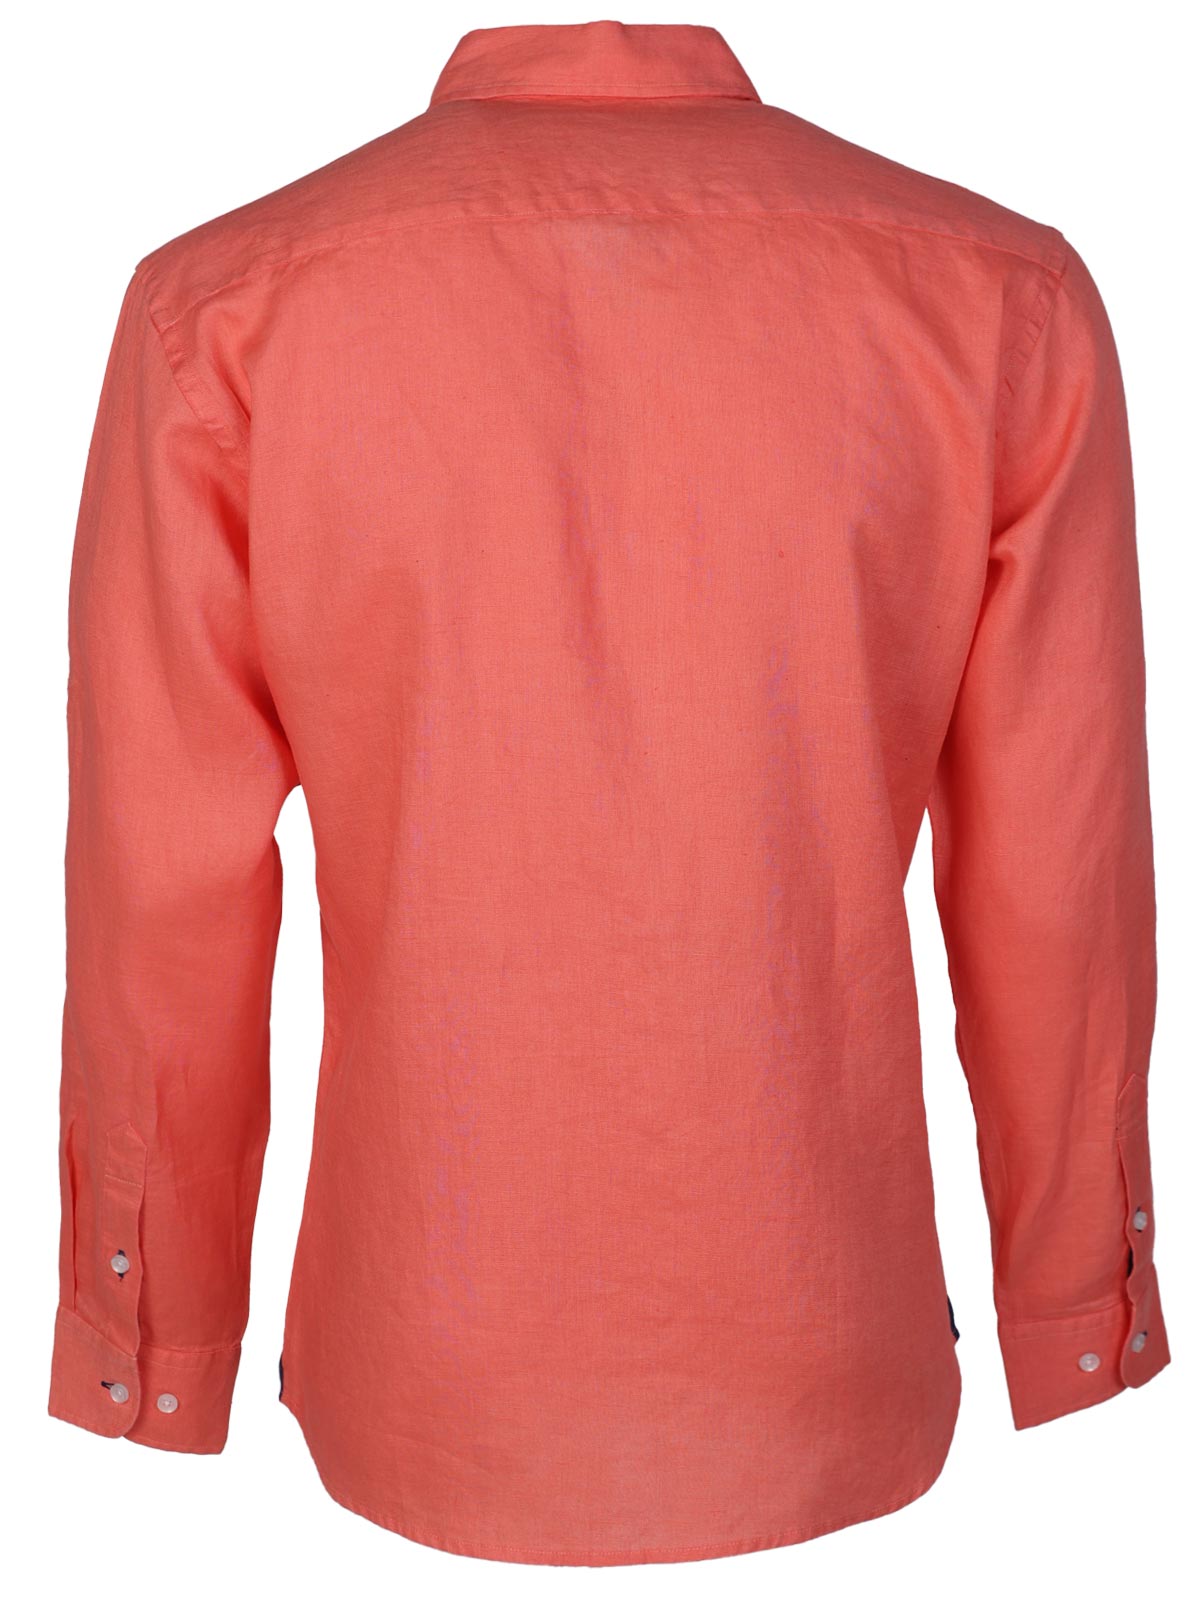 Λινό πουκάμισο σε κοραλί χρώμα - 21593 € 55.12 img2